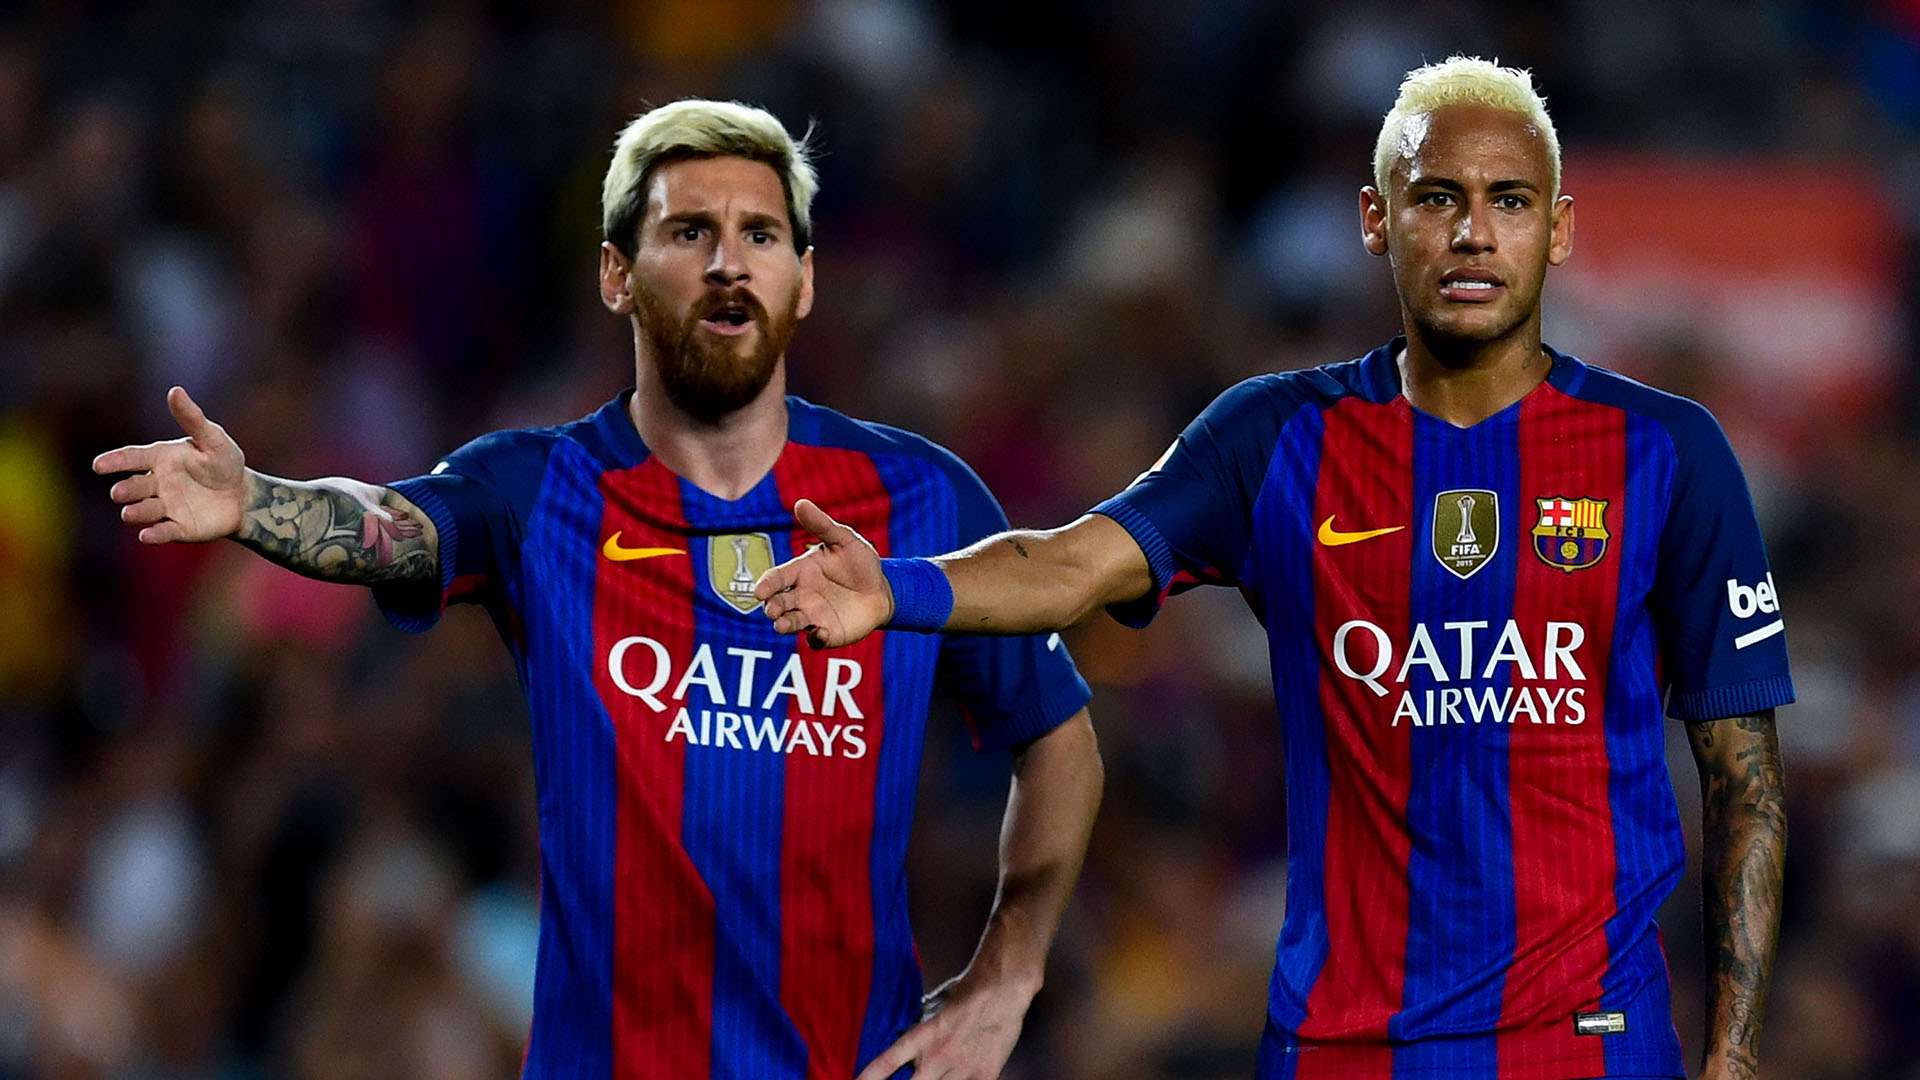 La discussion intime entre Messi et Neymar révélée par France Football